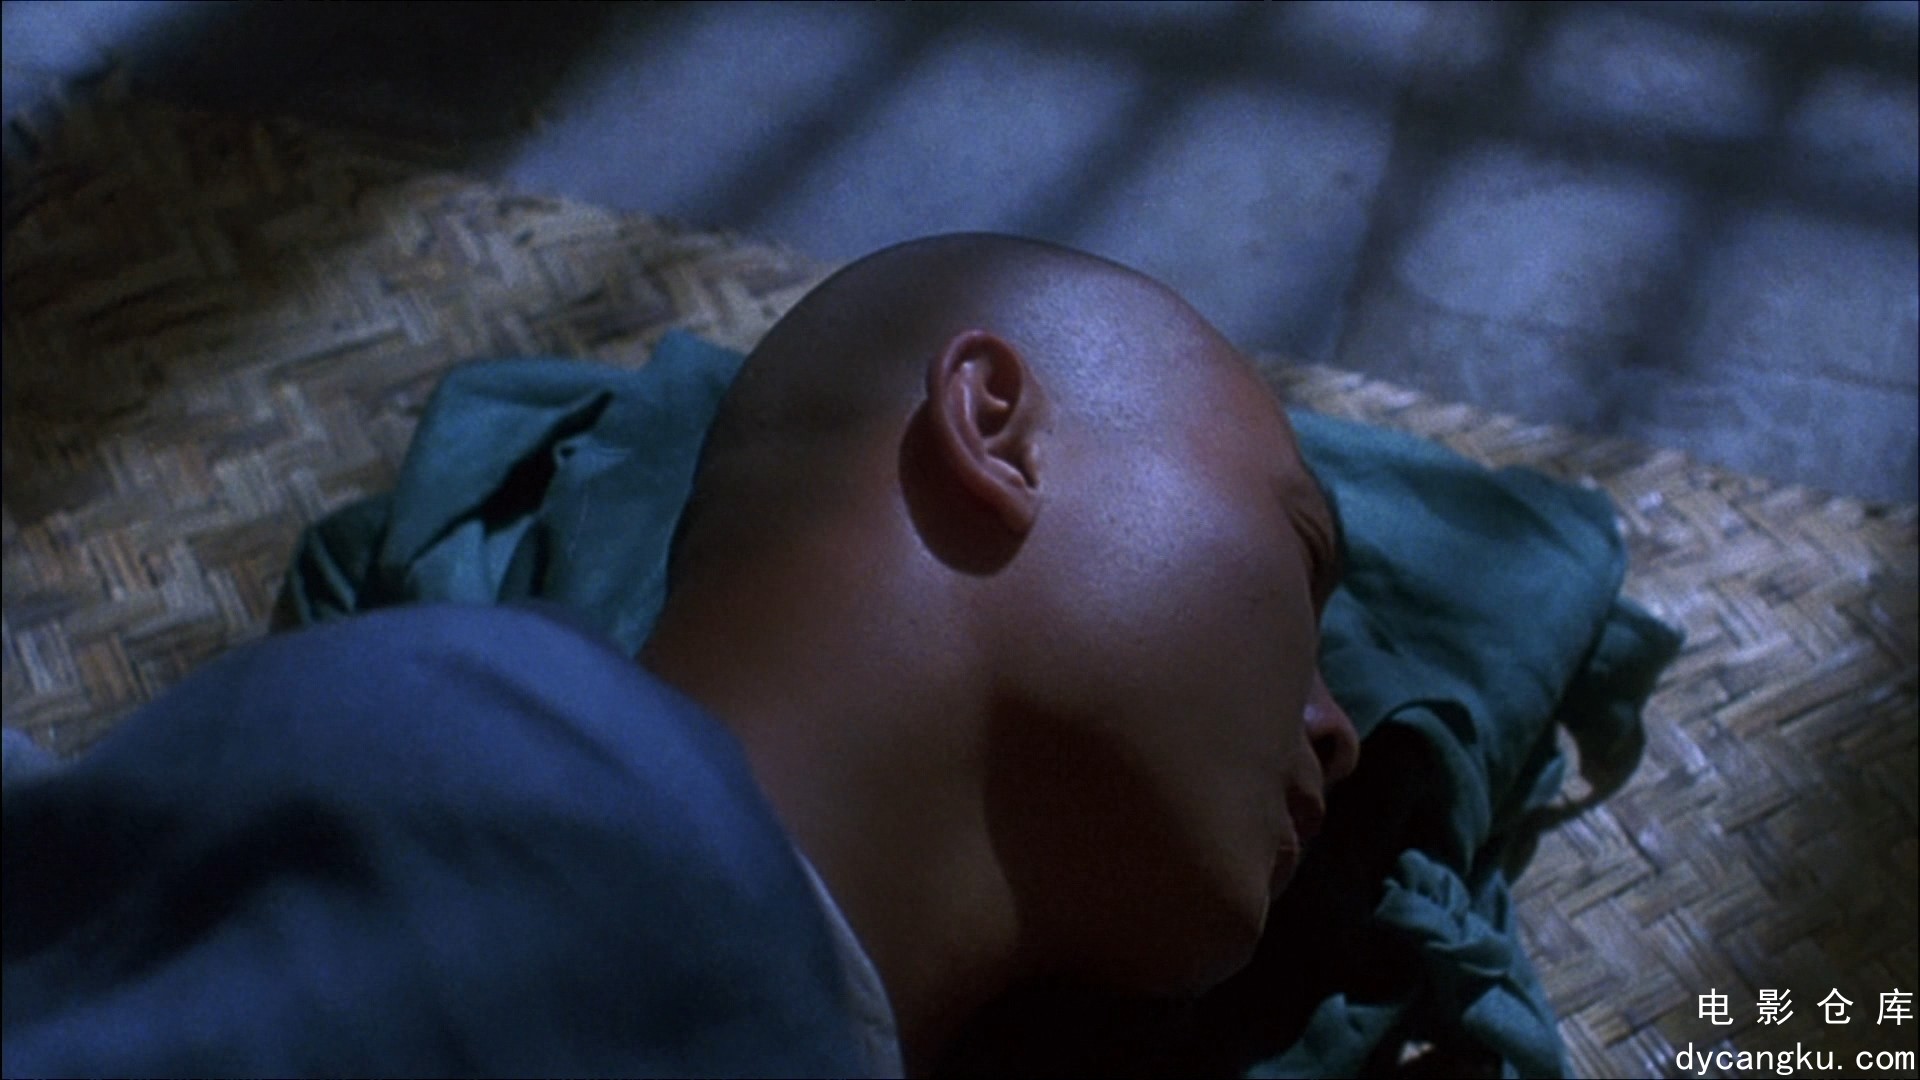 [电影仓库dycangku.com]The.Tai-Chi.Master.1993.BluRay.1080p.AVC.DD5.1.mkv_snapsho.jpg